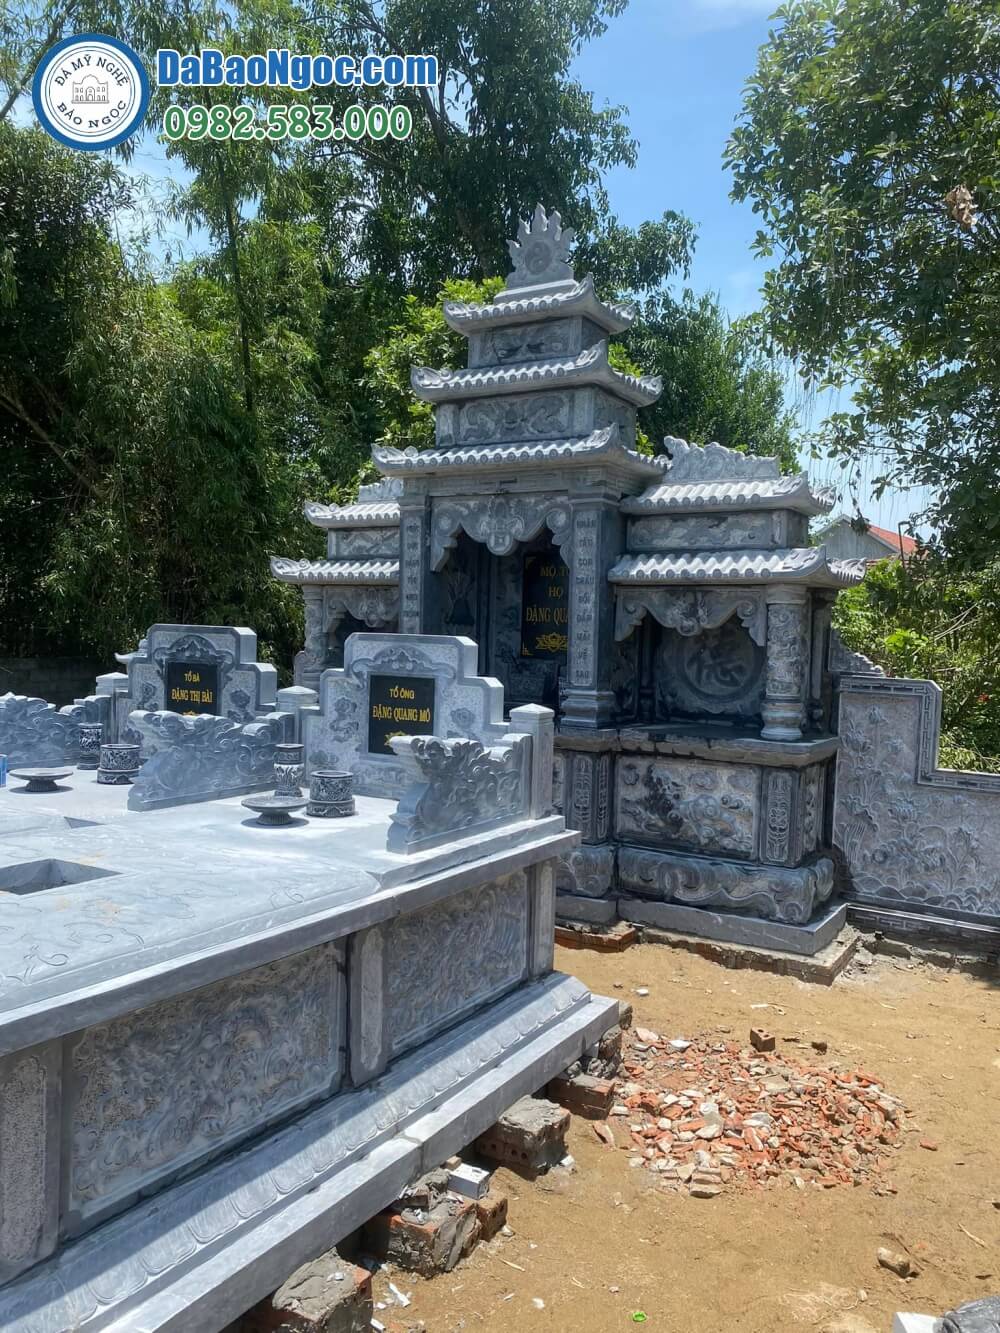 Làm mộ đá nguyên khối tại Bình Thuận | Cơ sở chế tác uy tín, báo giá, mẫu thiết kế riêng theo yêu cầu